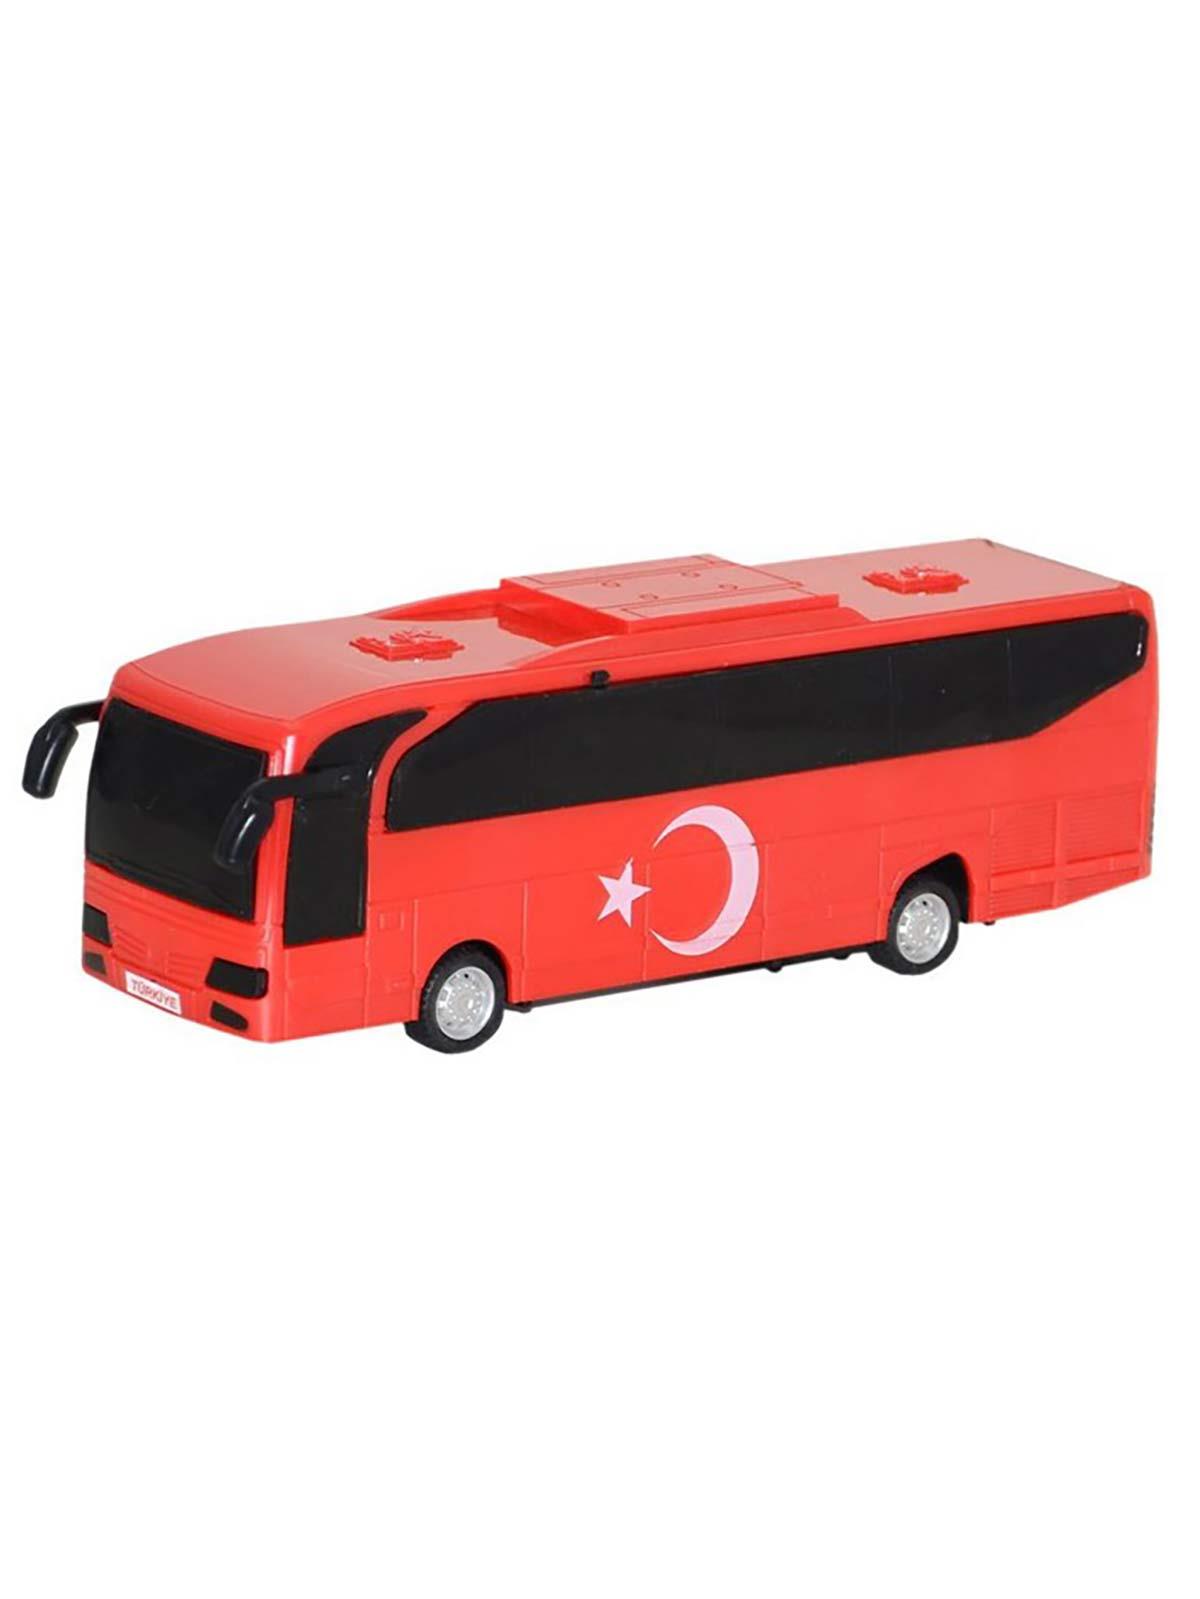 Canem Oyuncak Türk Bayraklı Otobüs